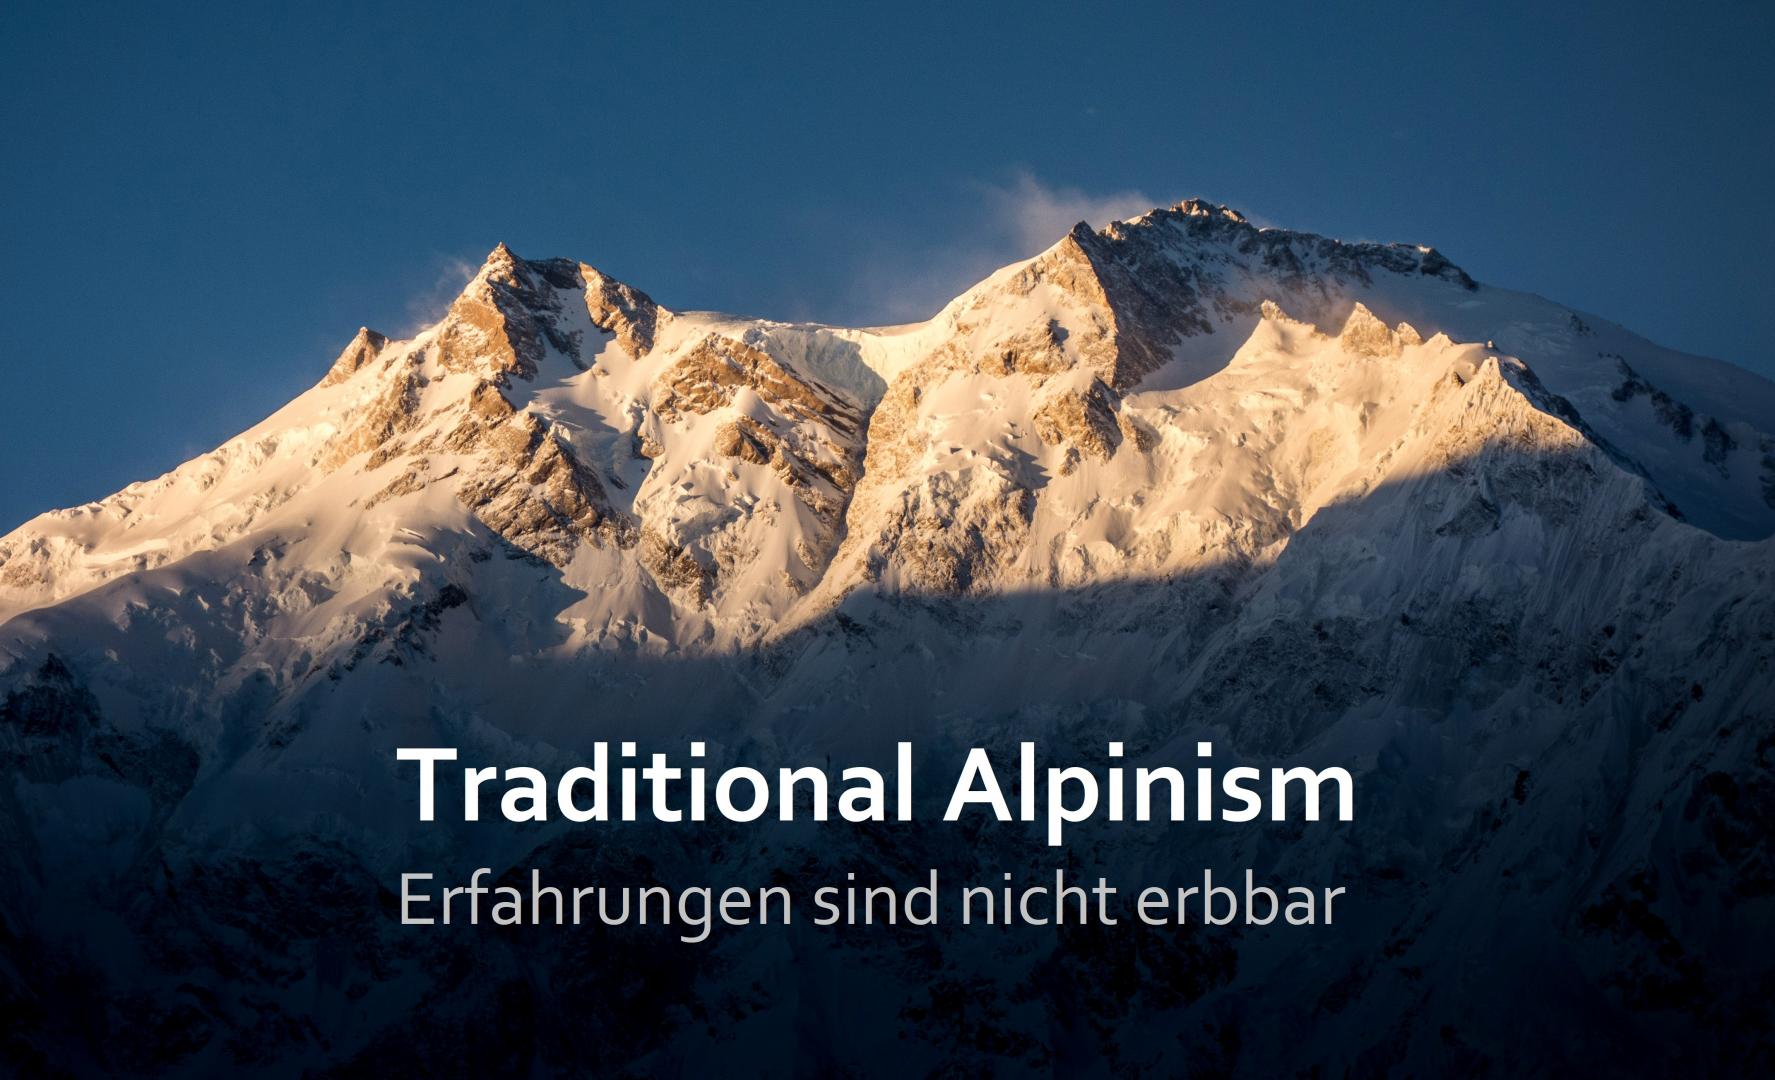 “Traditional Alpinism – Erfahrungen sind nicht erbbar”